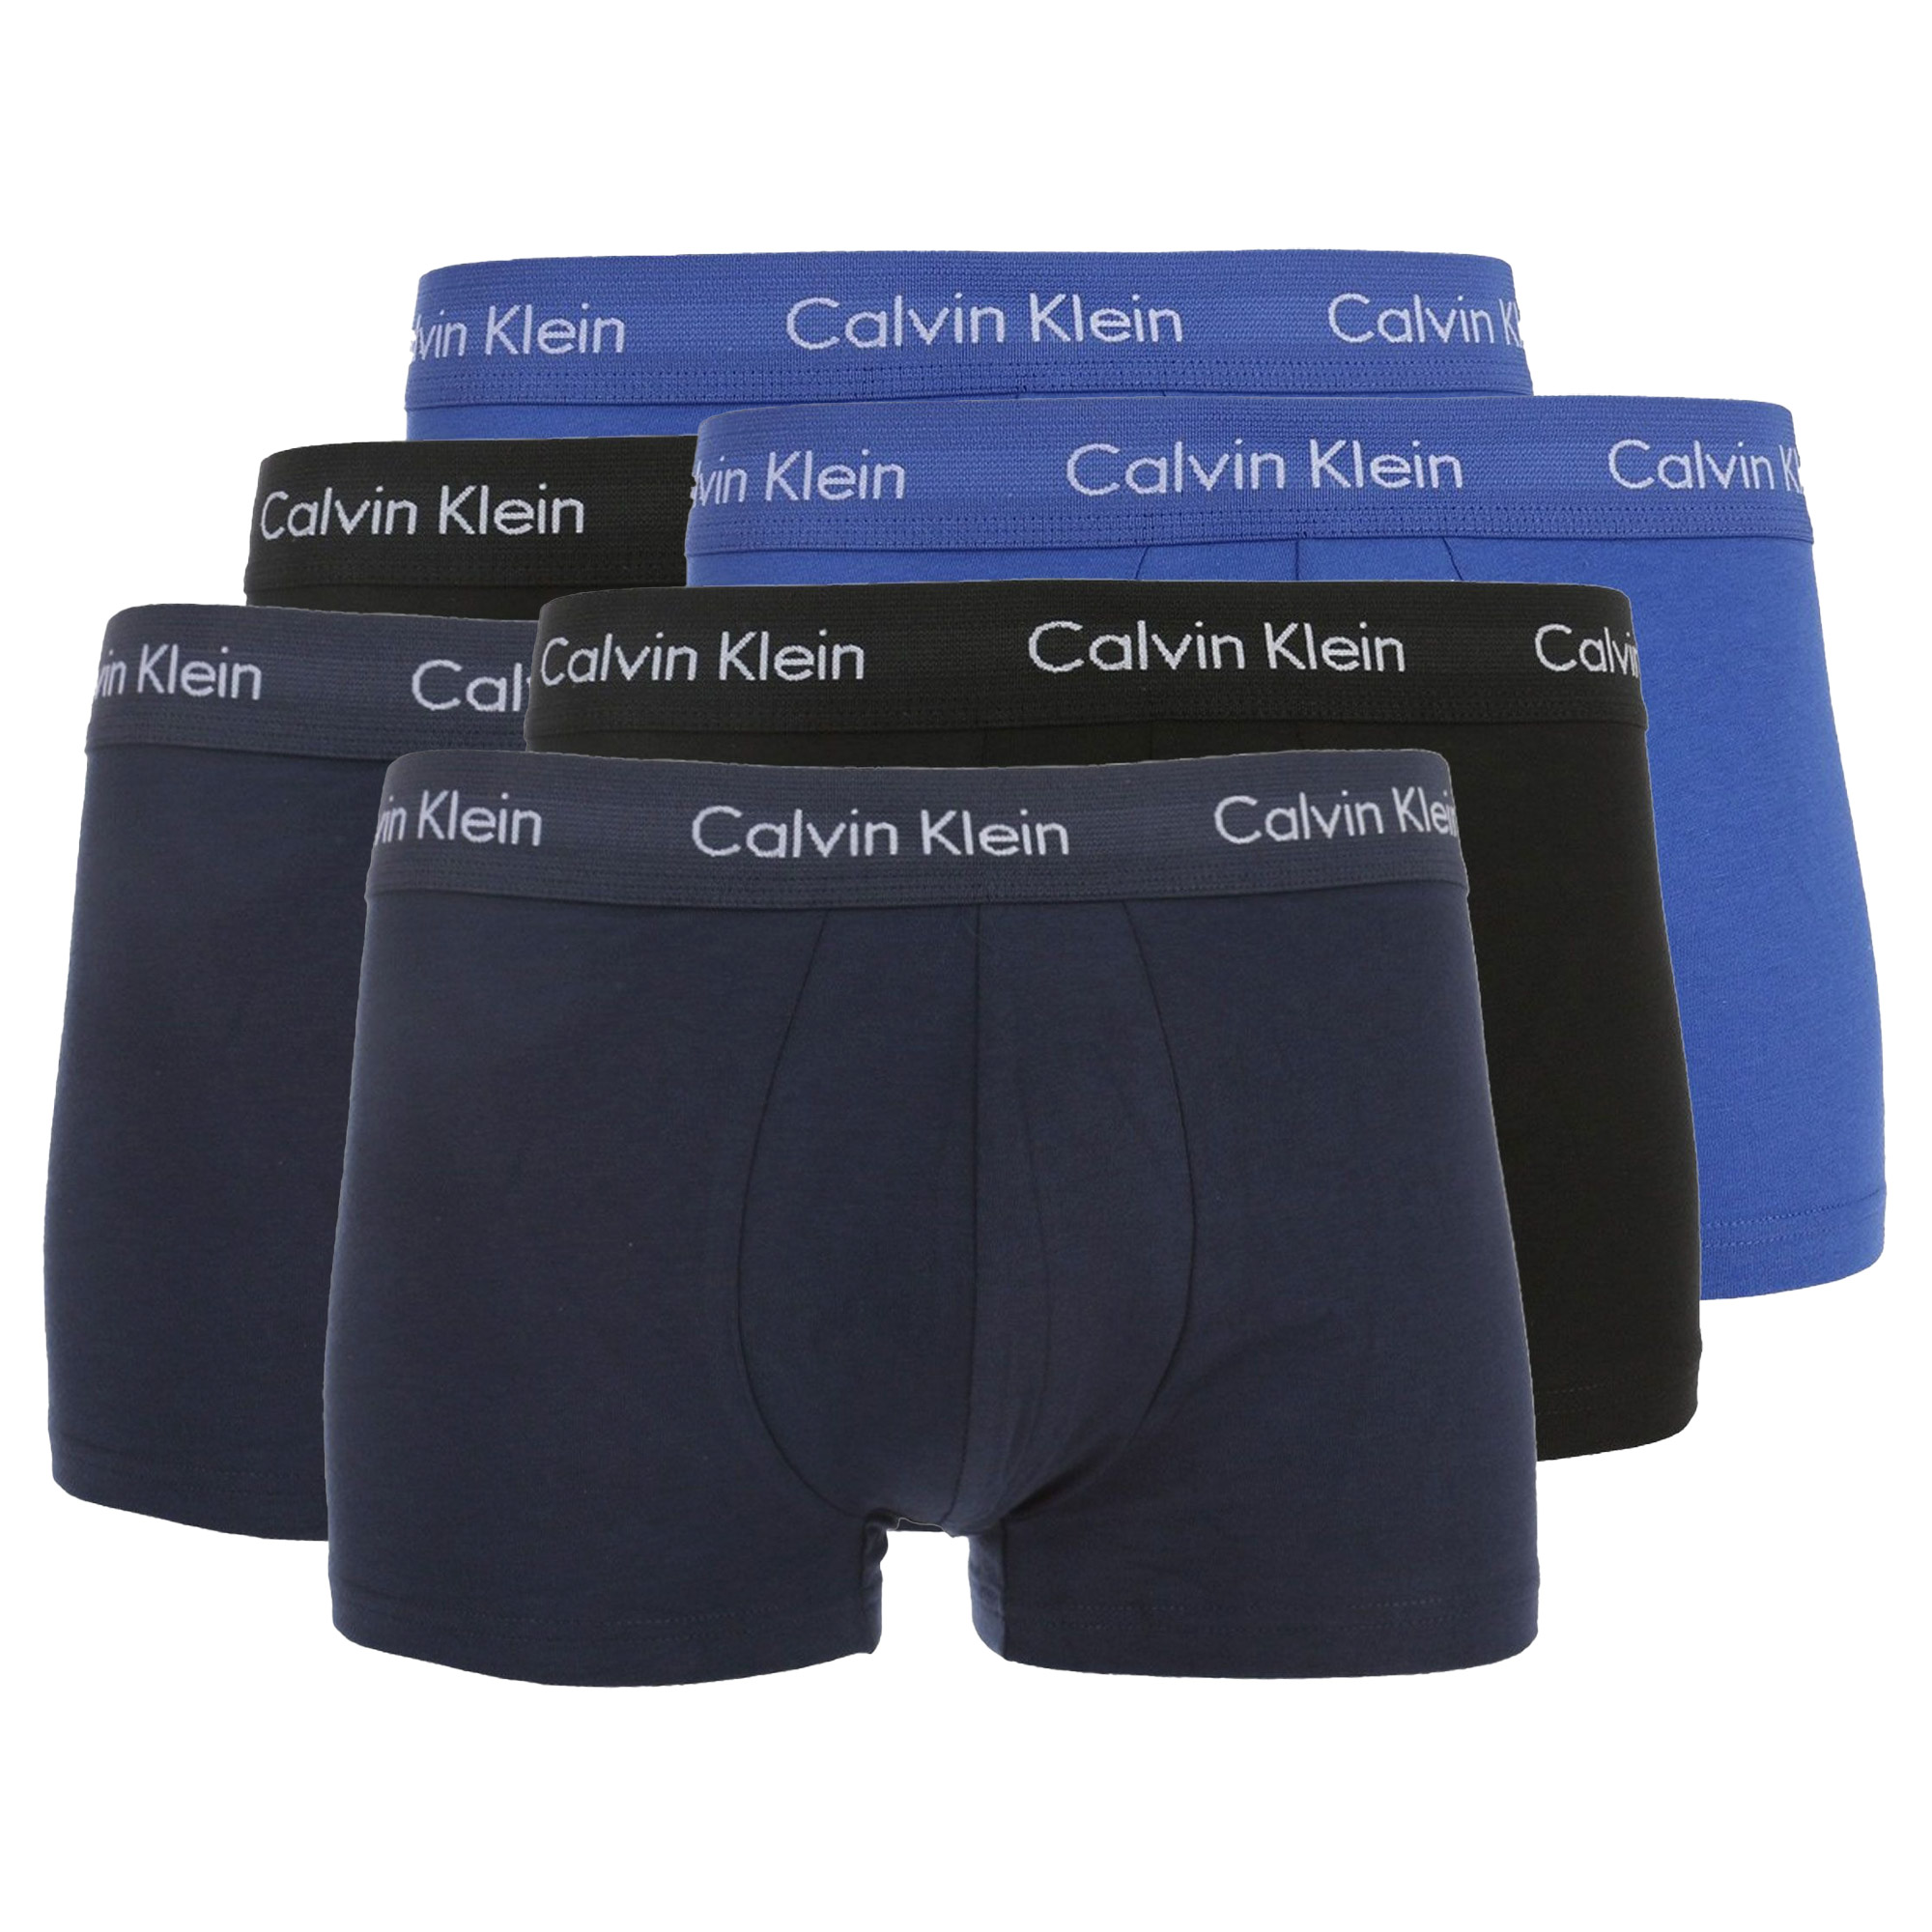 Boxer-shorts Calvin Klein Lo Rise Hommes (Lot de 6)